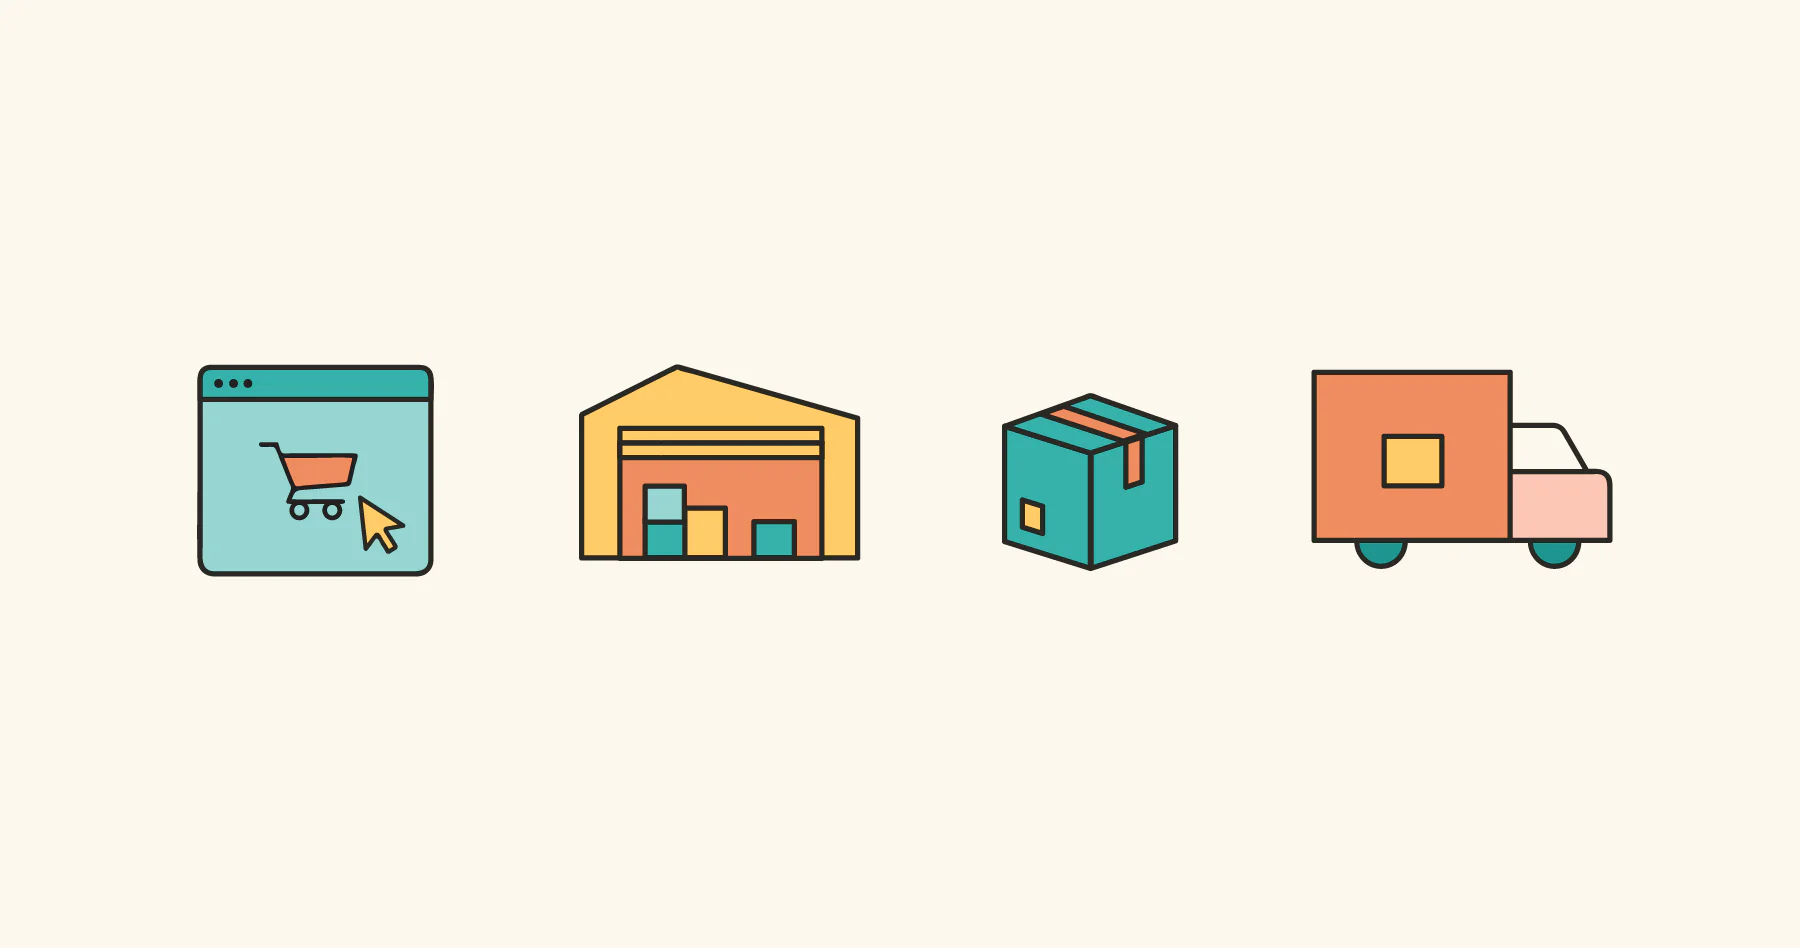 网购的一些图标：购物车、运货车、包装箱、住宅